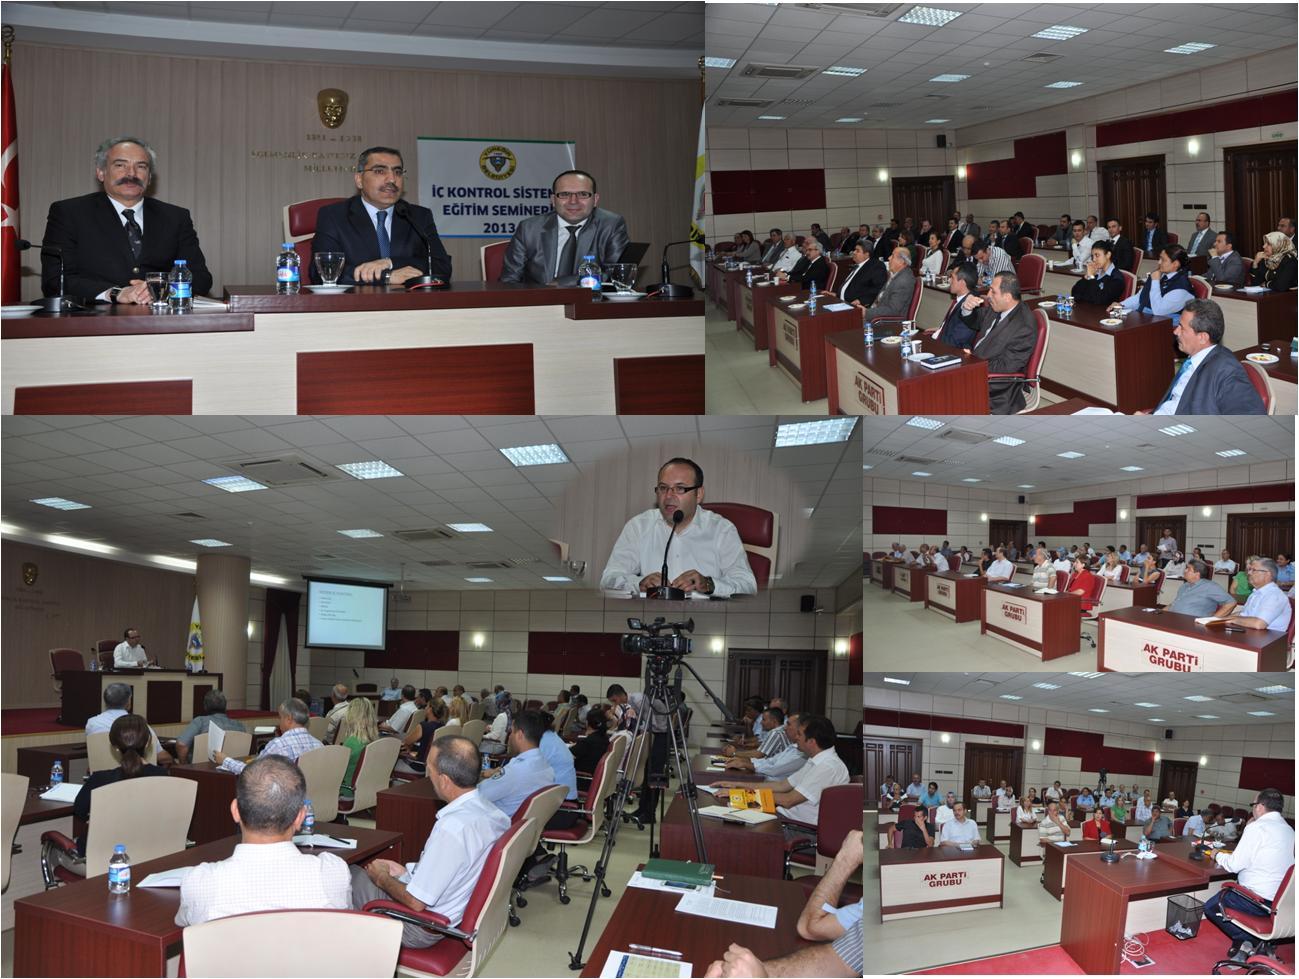 22/05/2013 tarihinde İş Sağlığı ve Güvenliği ile Sosyal Güvenlik Mevzuatı semineri düzenlenmiş, eğitimci olarak Türkiye Belediyeler Birliği SGK Müfettişi Yazı İşleri Müdürü Mahmut COLAK katıldığı